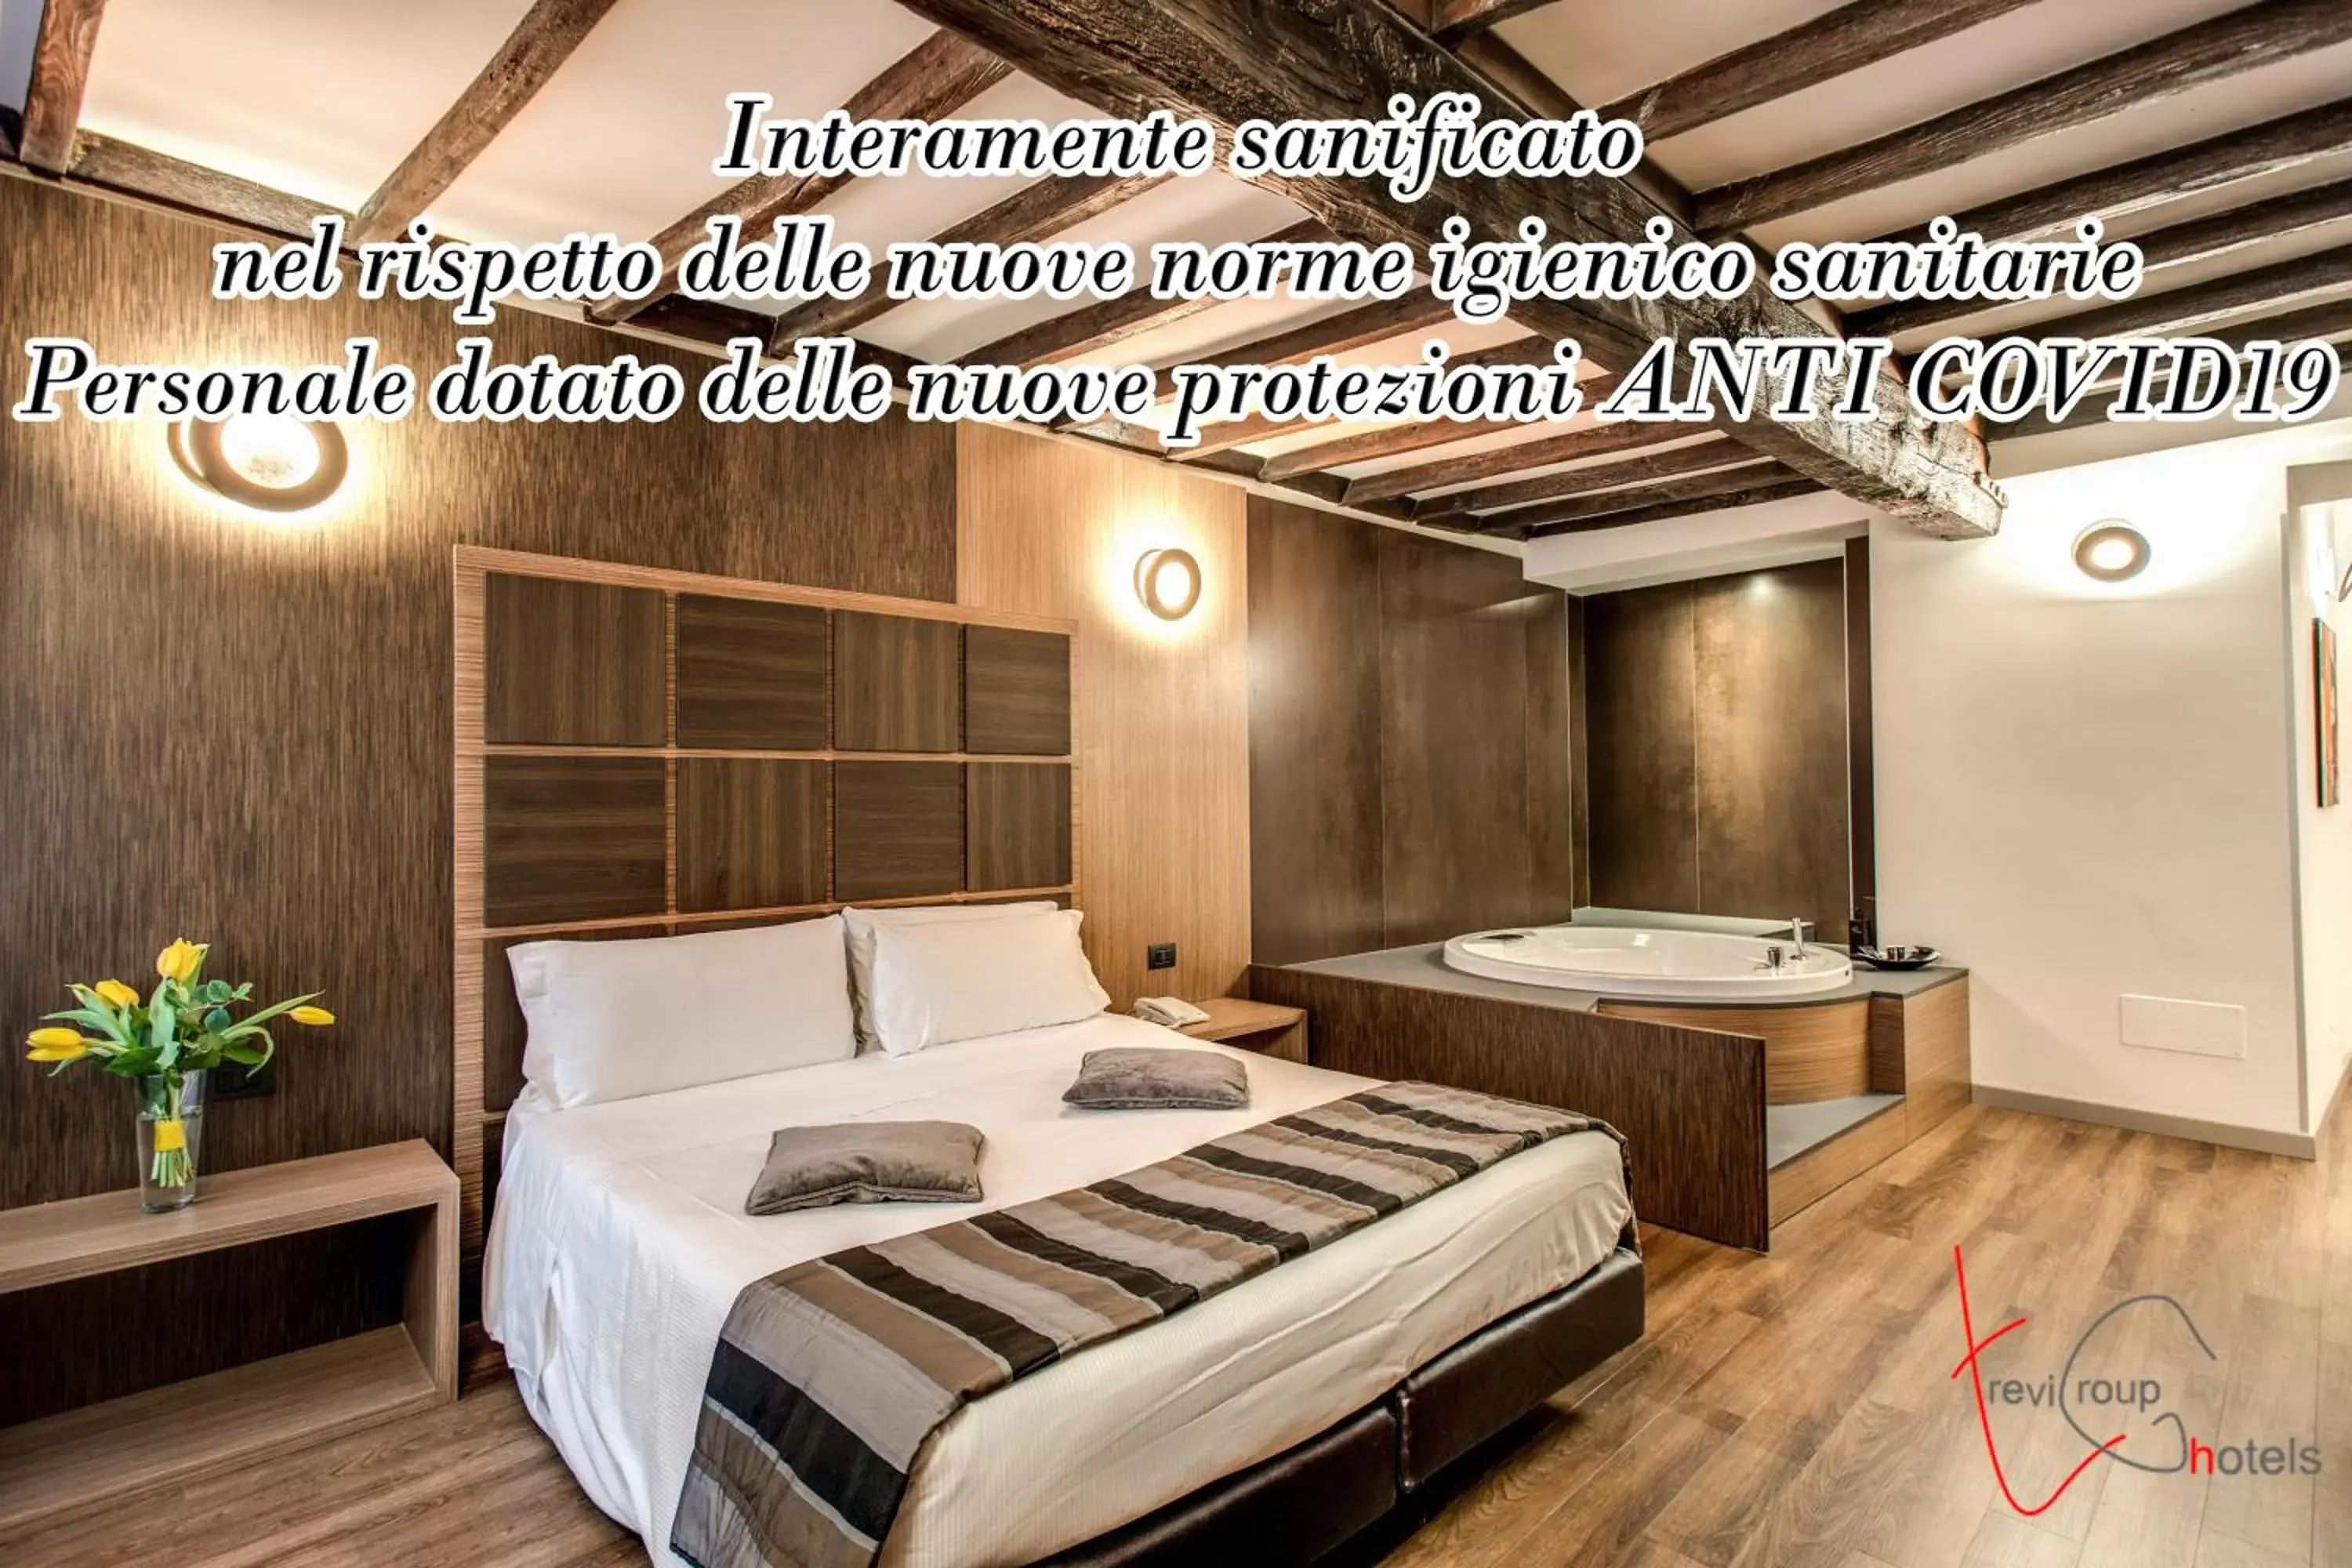 Hotel Trevi - Gruppo Trevi Hotels